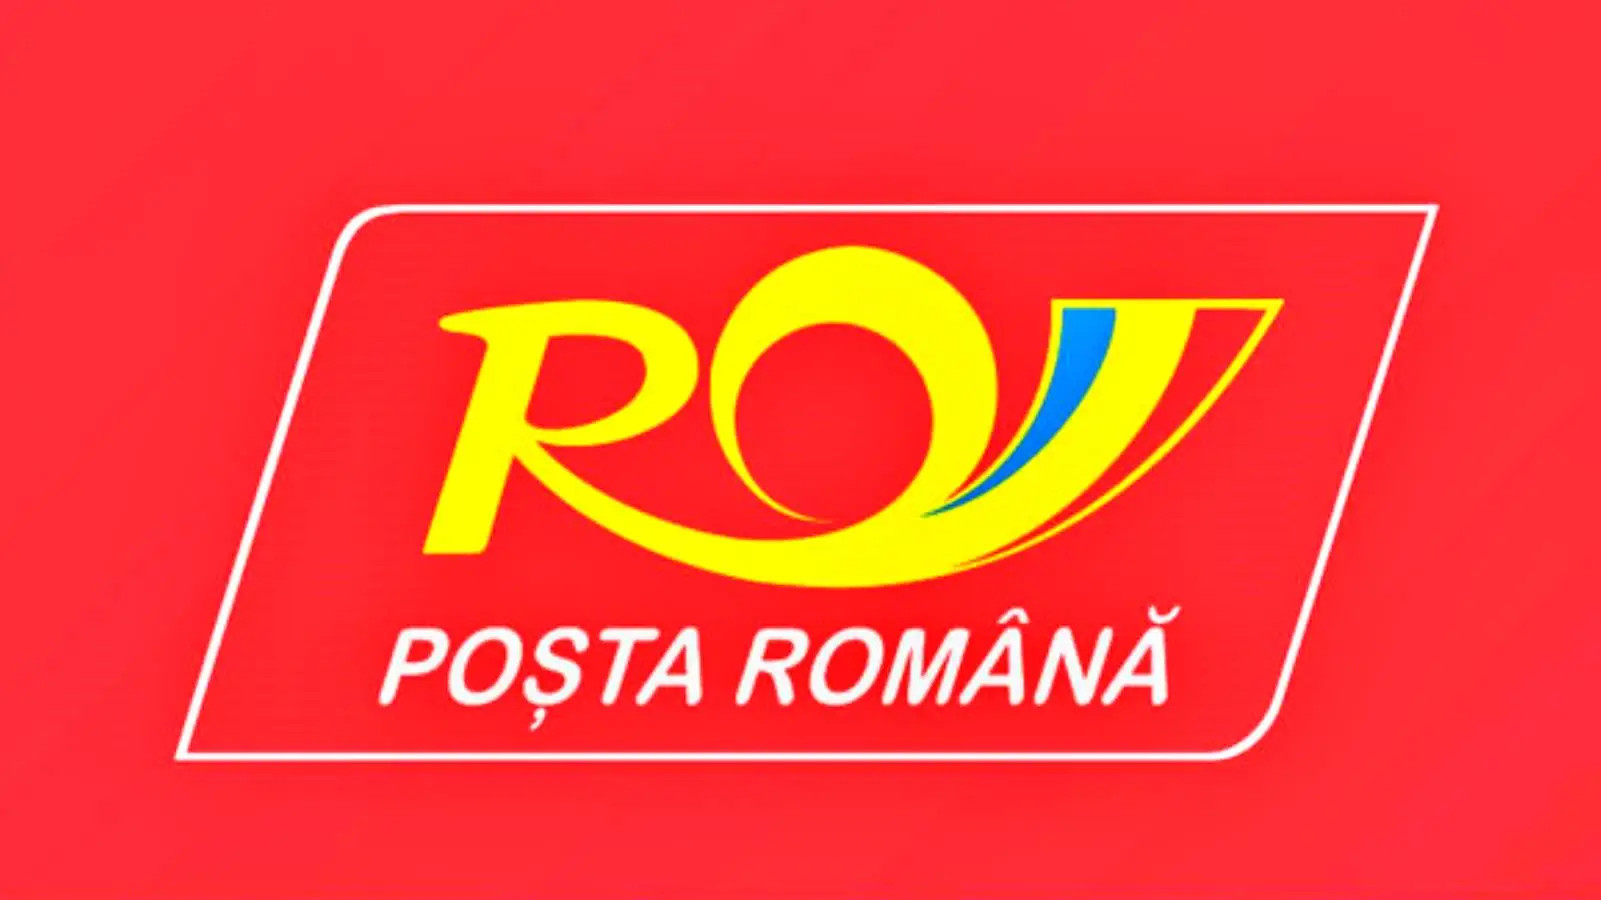 Correos de Rumania Buzones digitales Recoger paquetes en cualquier momento